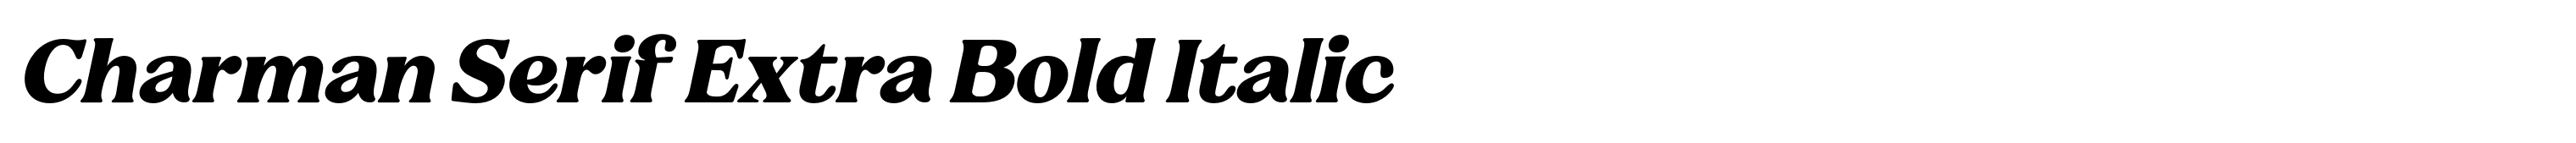 Charman Serif Extra Bold Italic